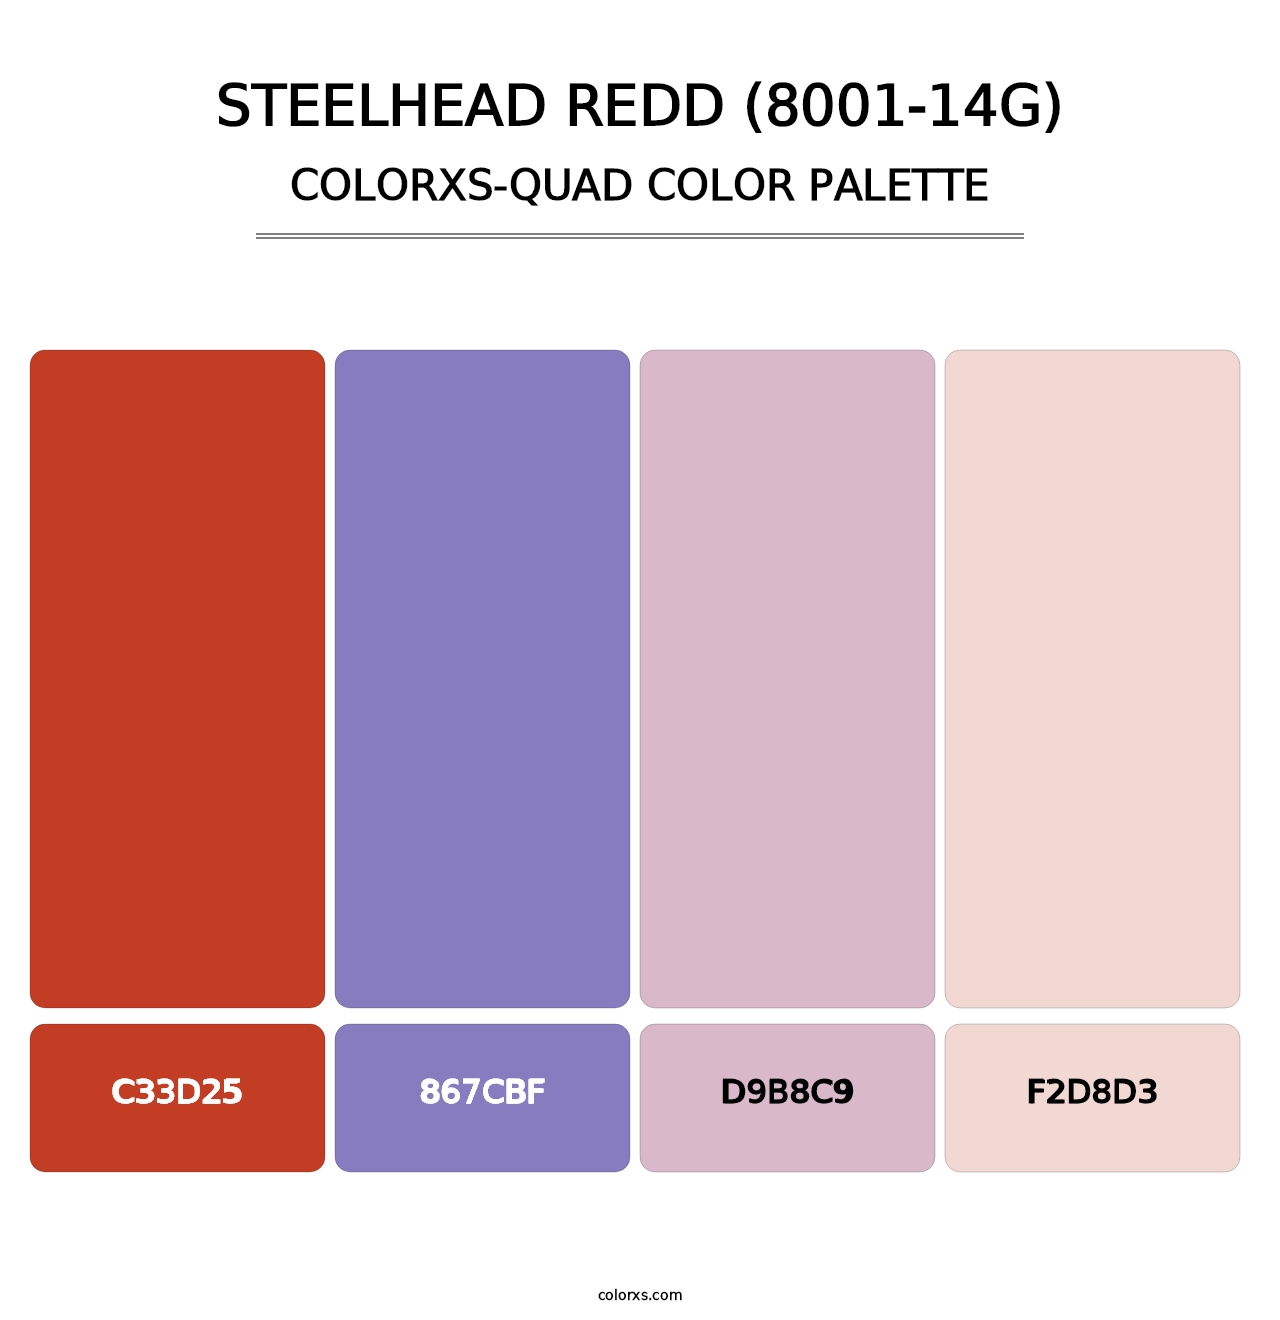 Steelhead Redd (8001-14G) - Colorxs Quad Palette